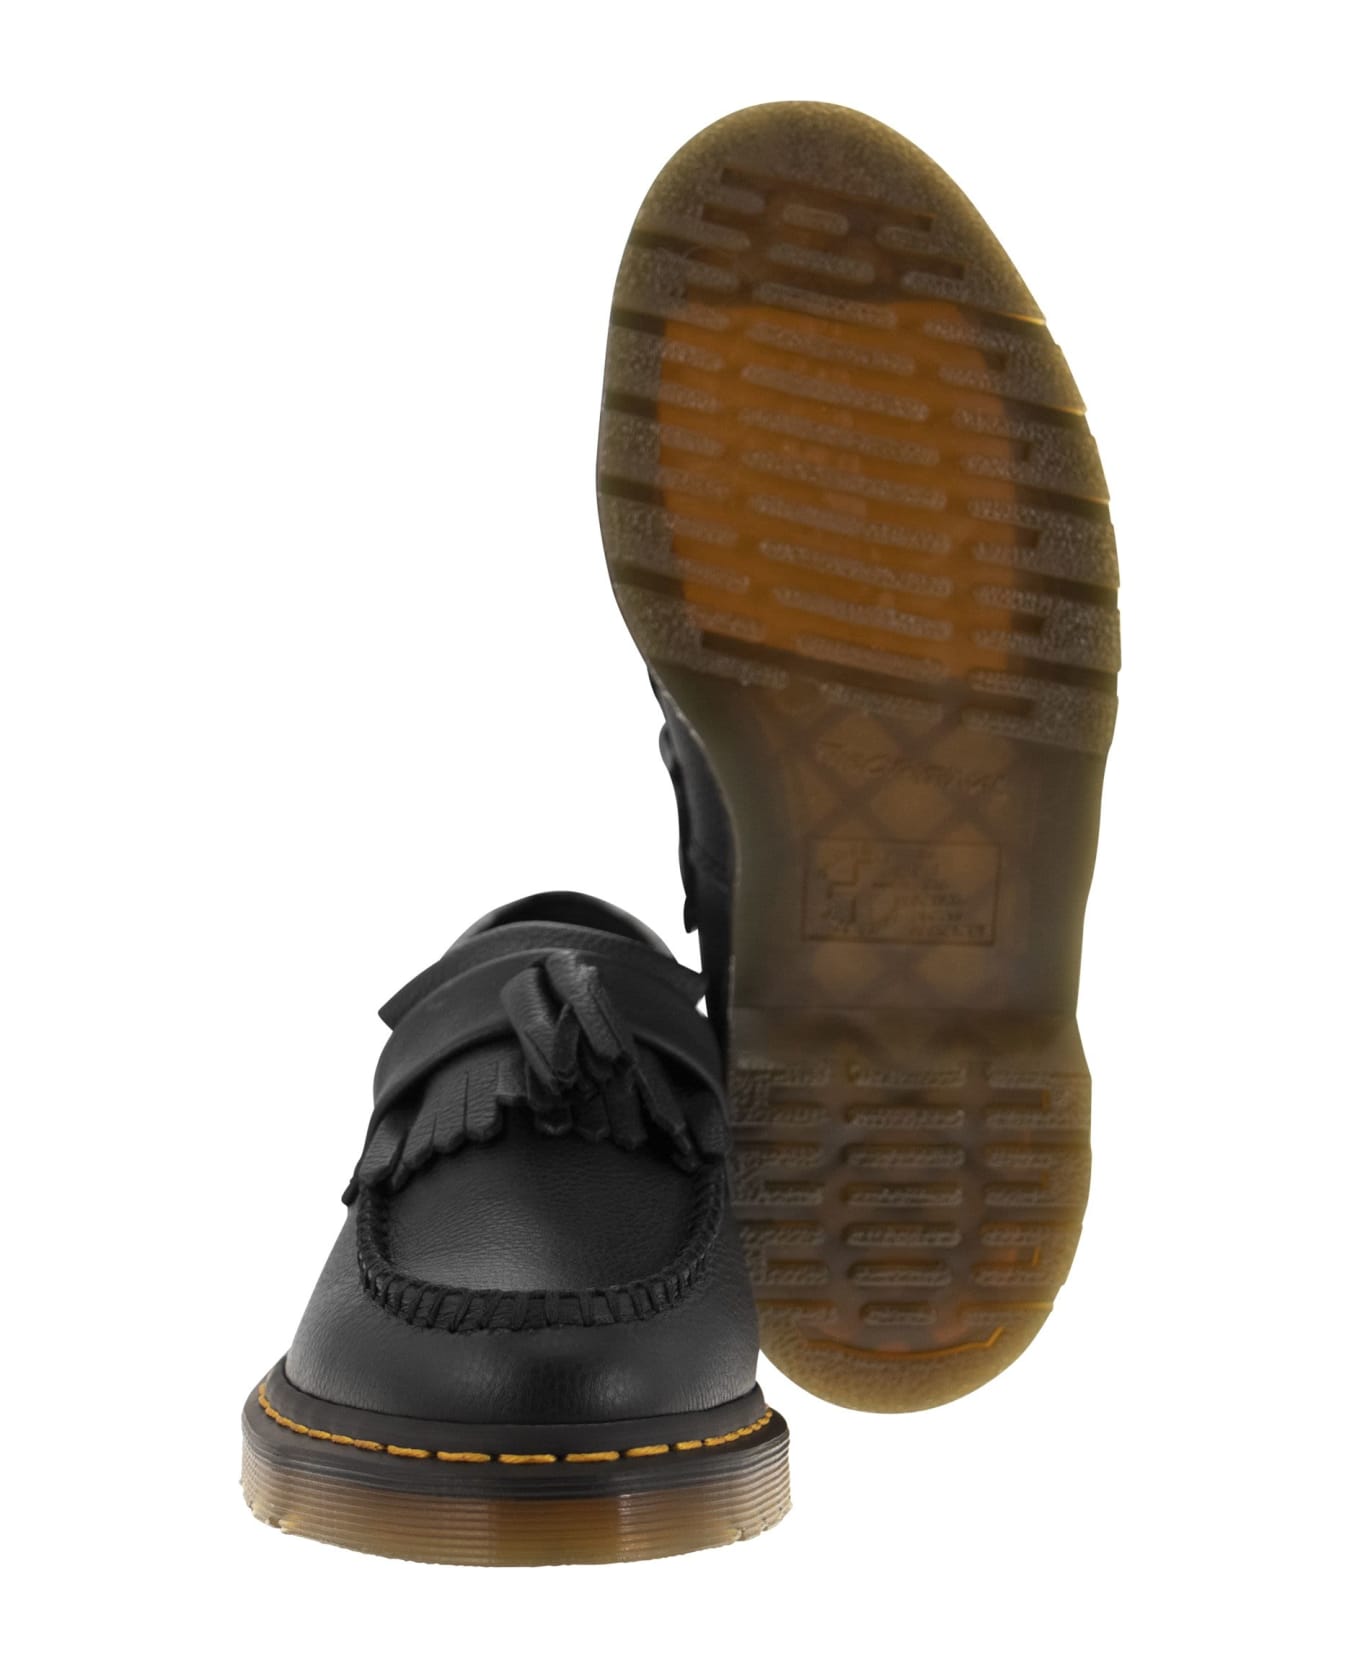 Dr. Martens Adrian Tassel Detailed Loafers - Black フラットシューズ